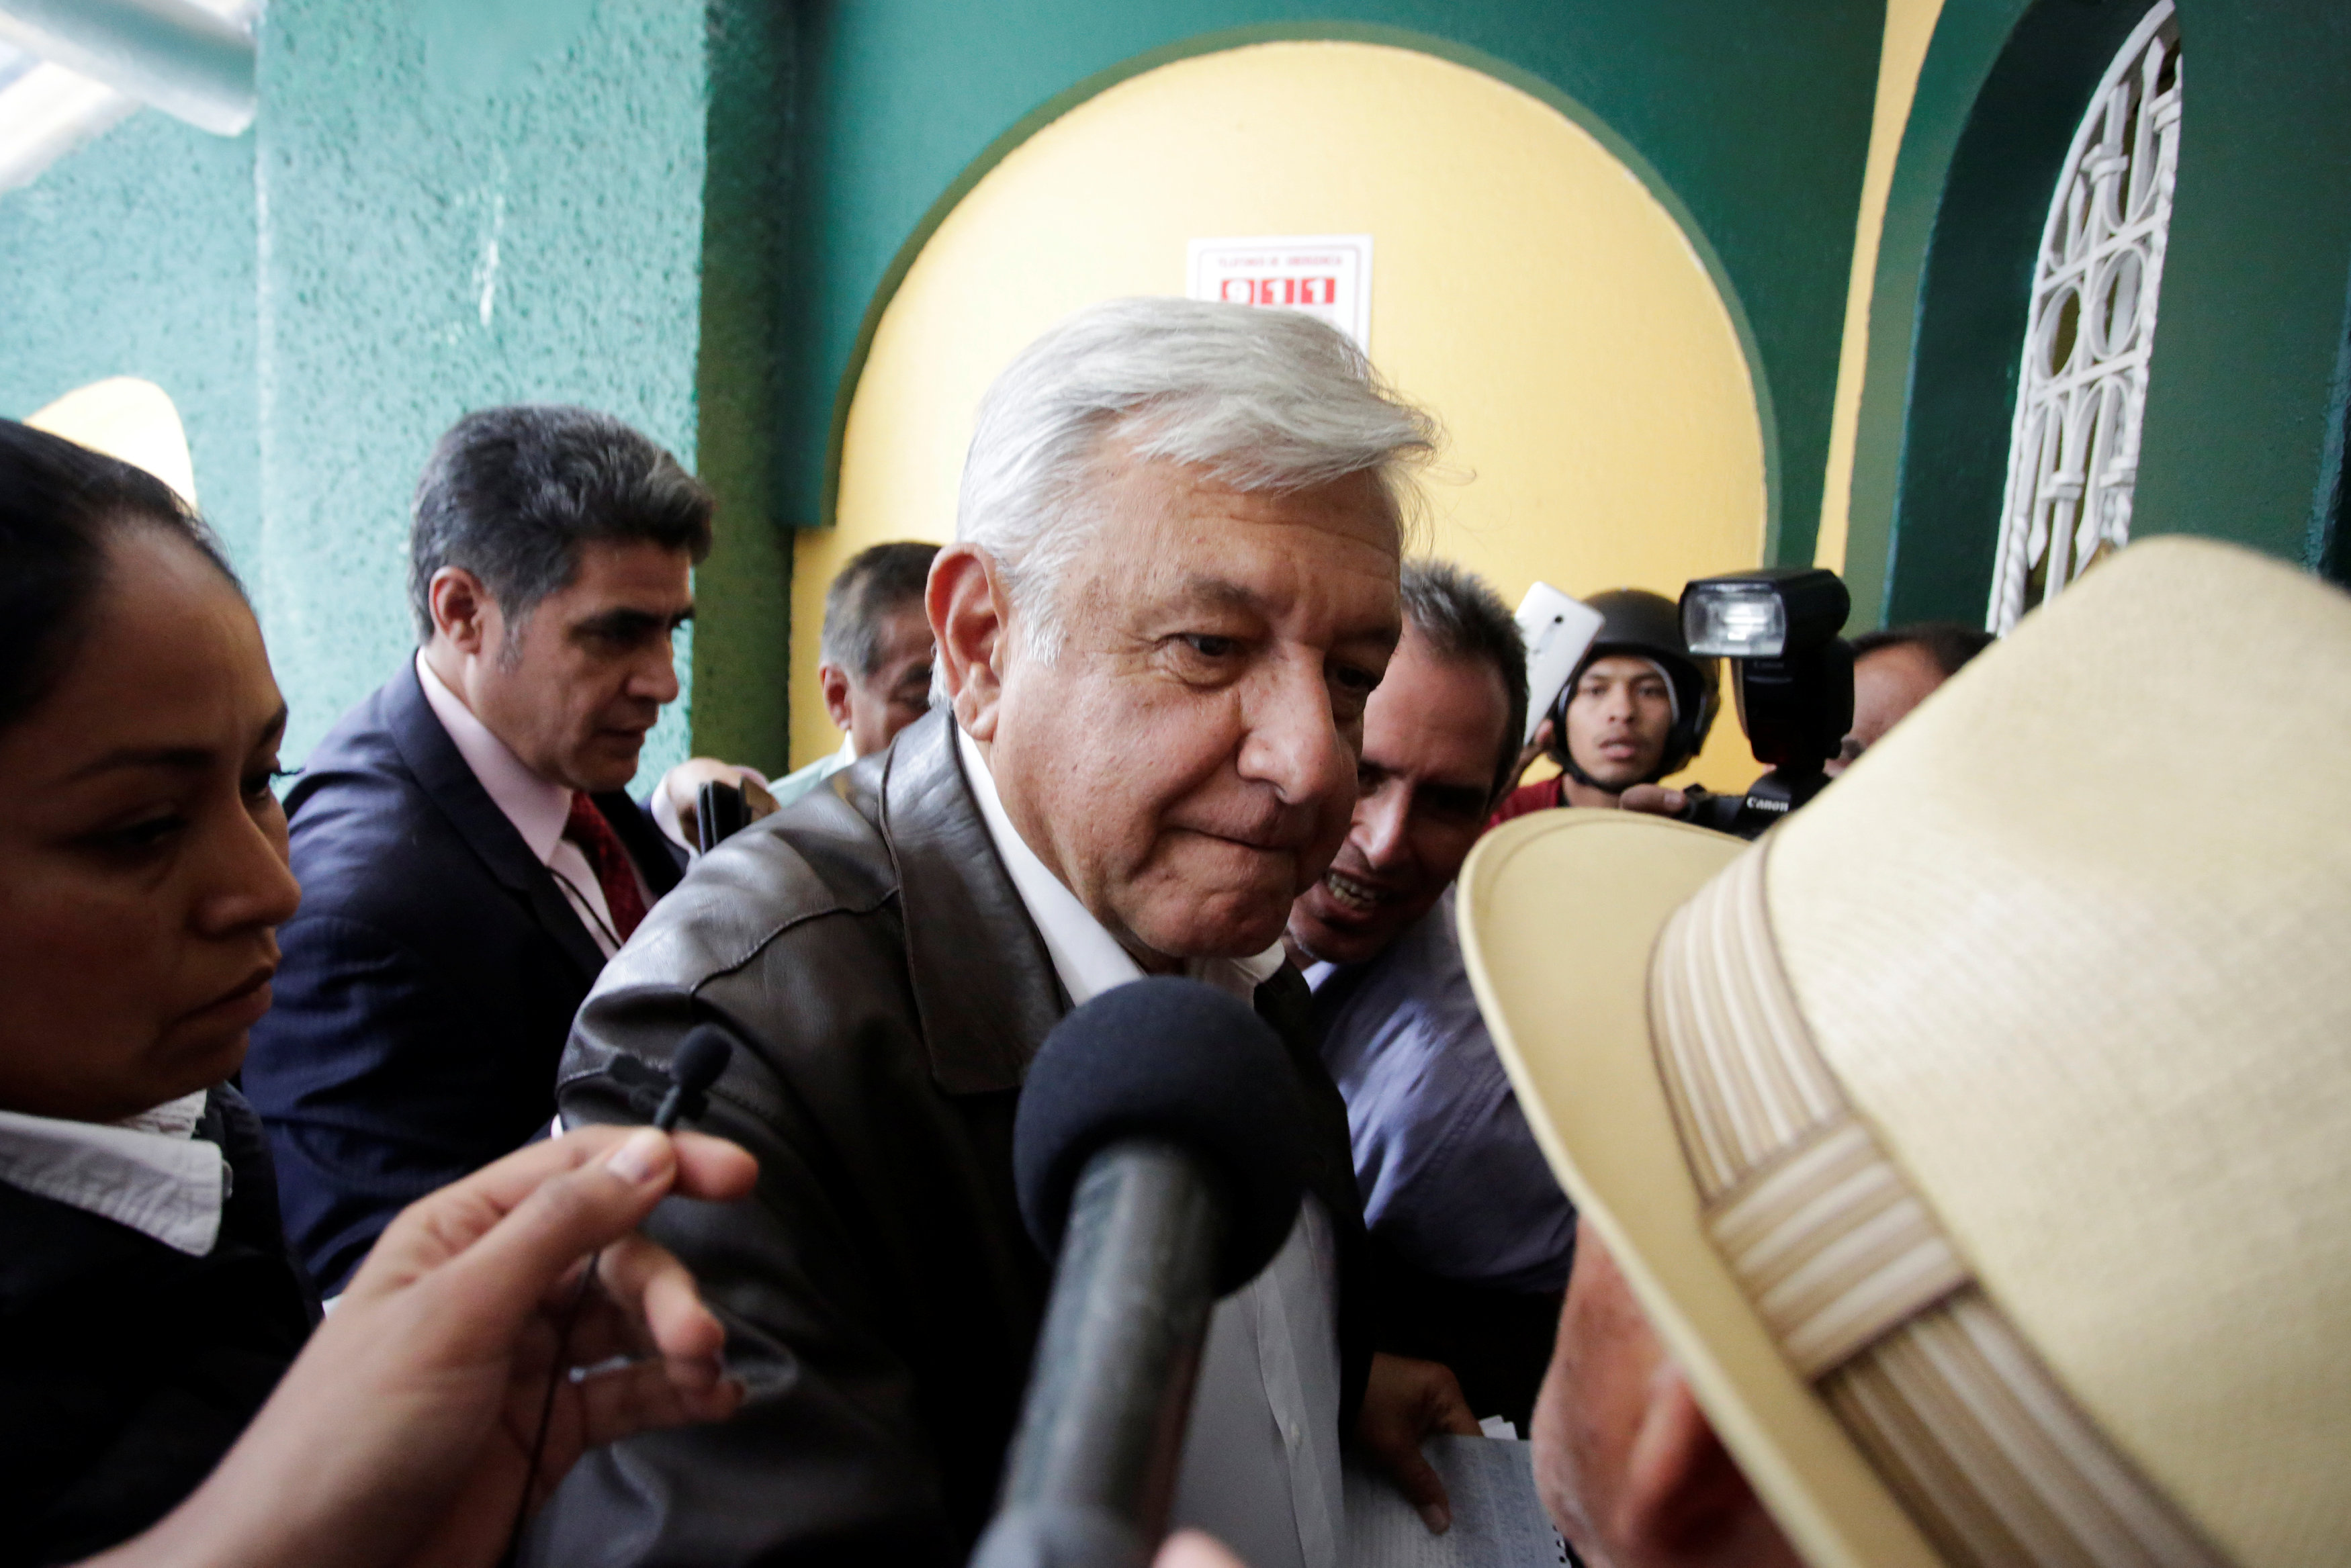 الرئيس المكسيكي المنتخب أندريس مانويل لوبيز أوبرادور يصل لاجتماع مع الحكومة، 7 يوليو 2018. رويترز